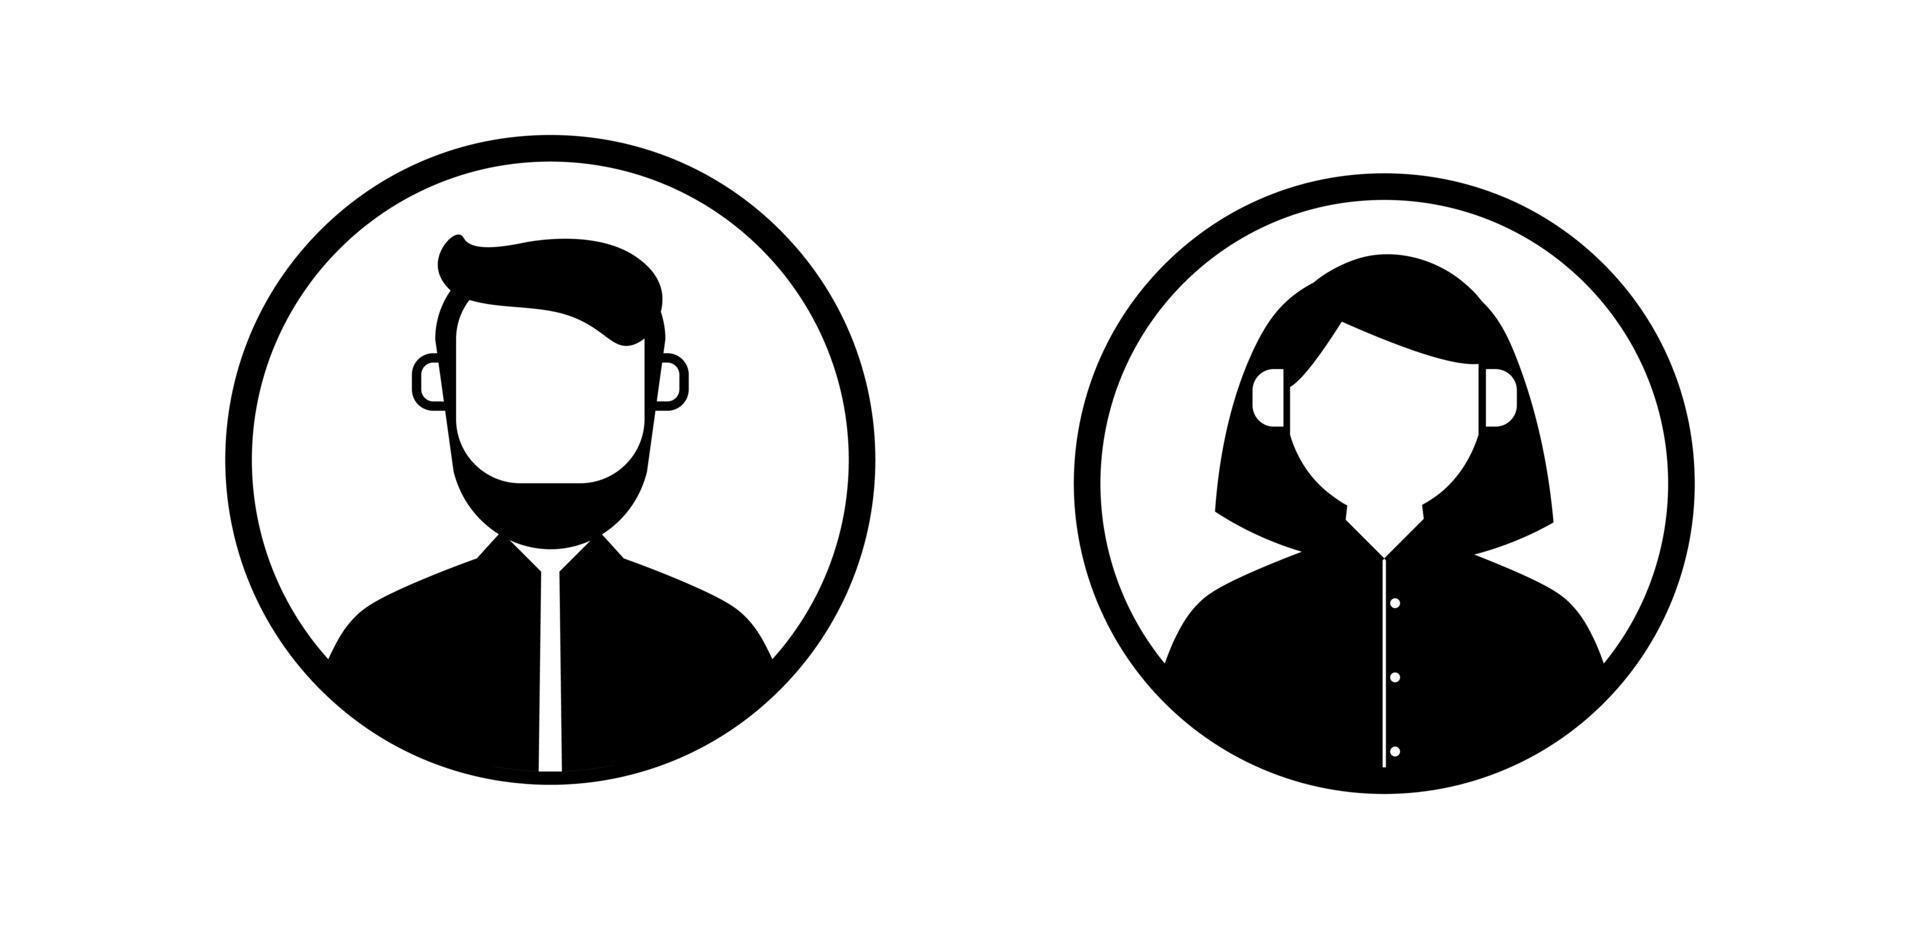 définir l'icône masculine et féminine de l'avatar de l'utilisateur. icône de personne dans les couleurs noires. vecteur